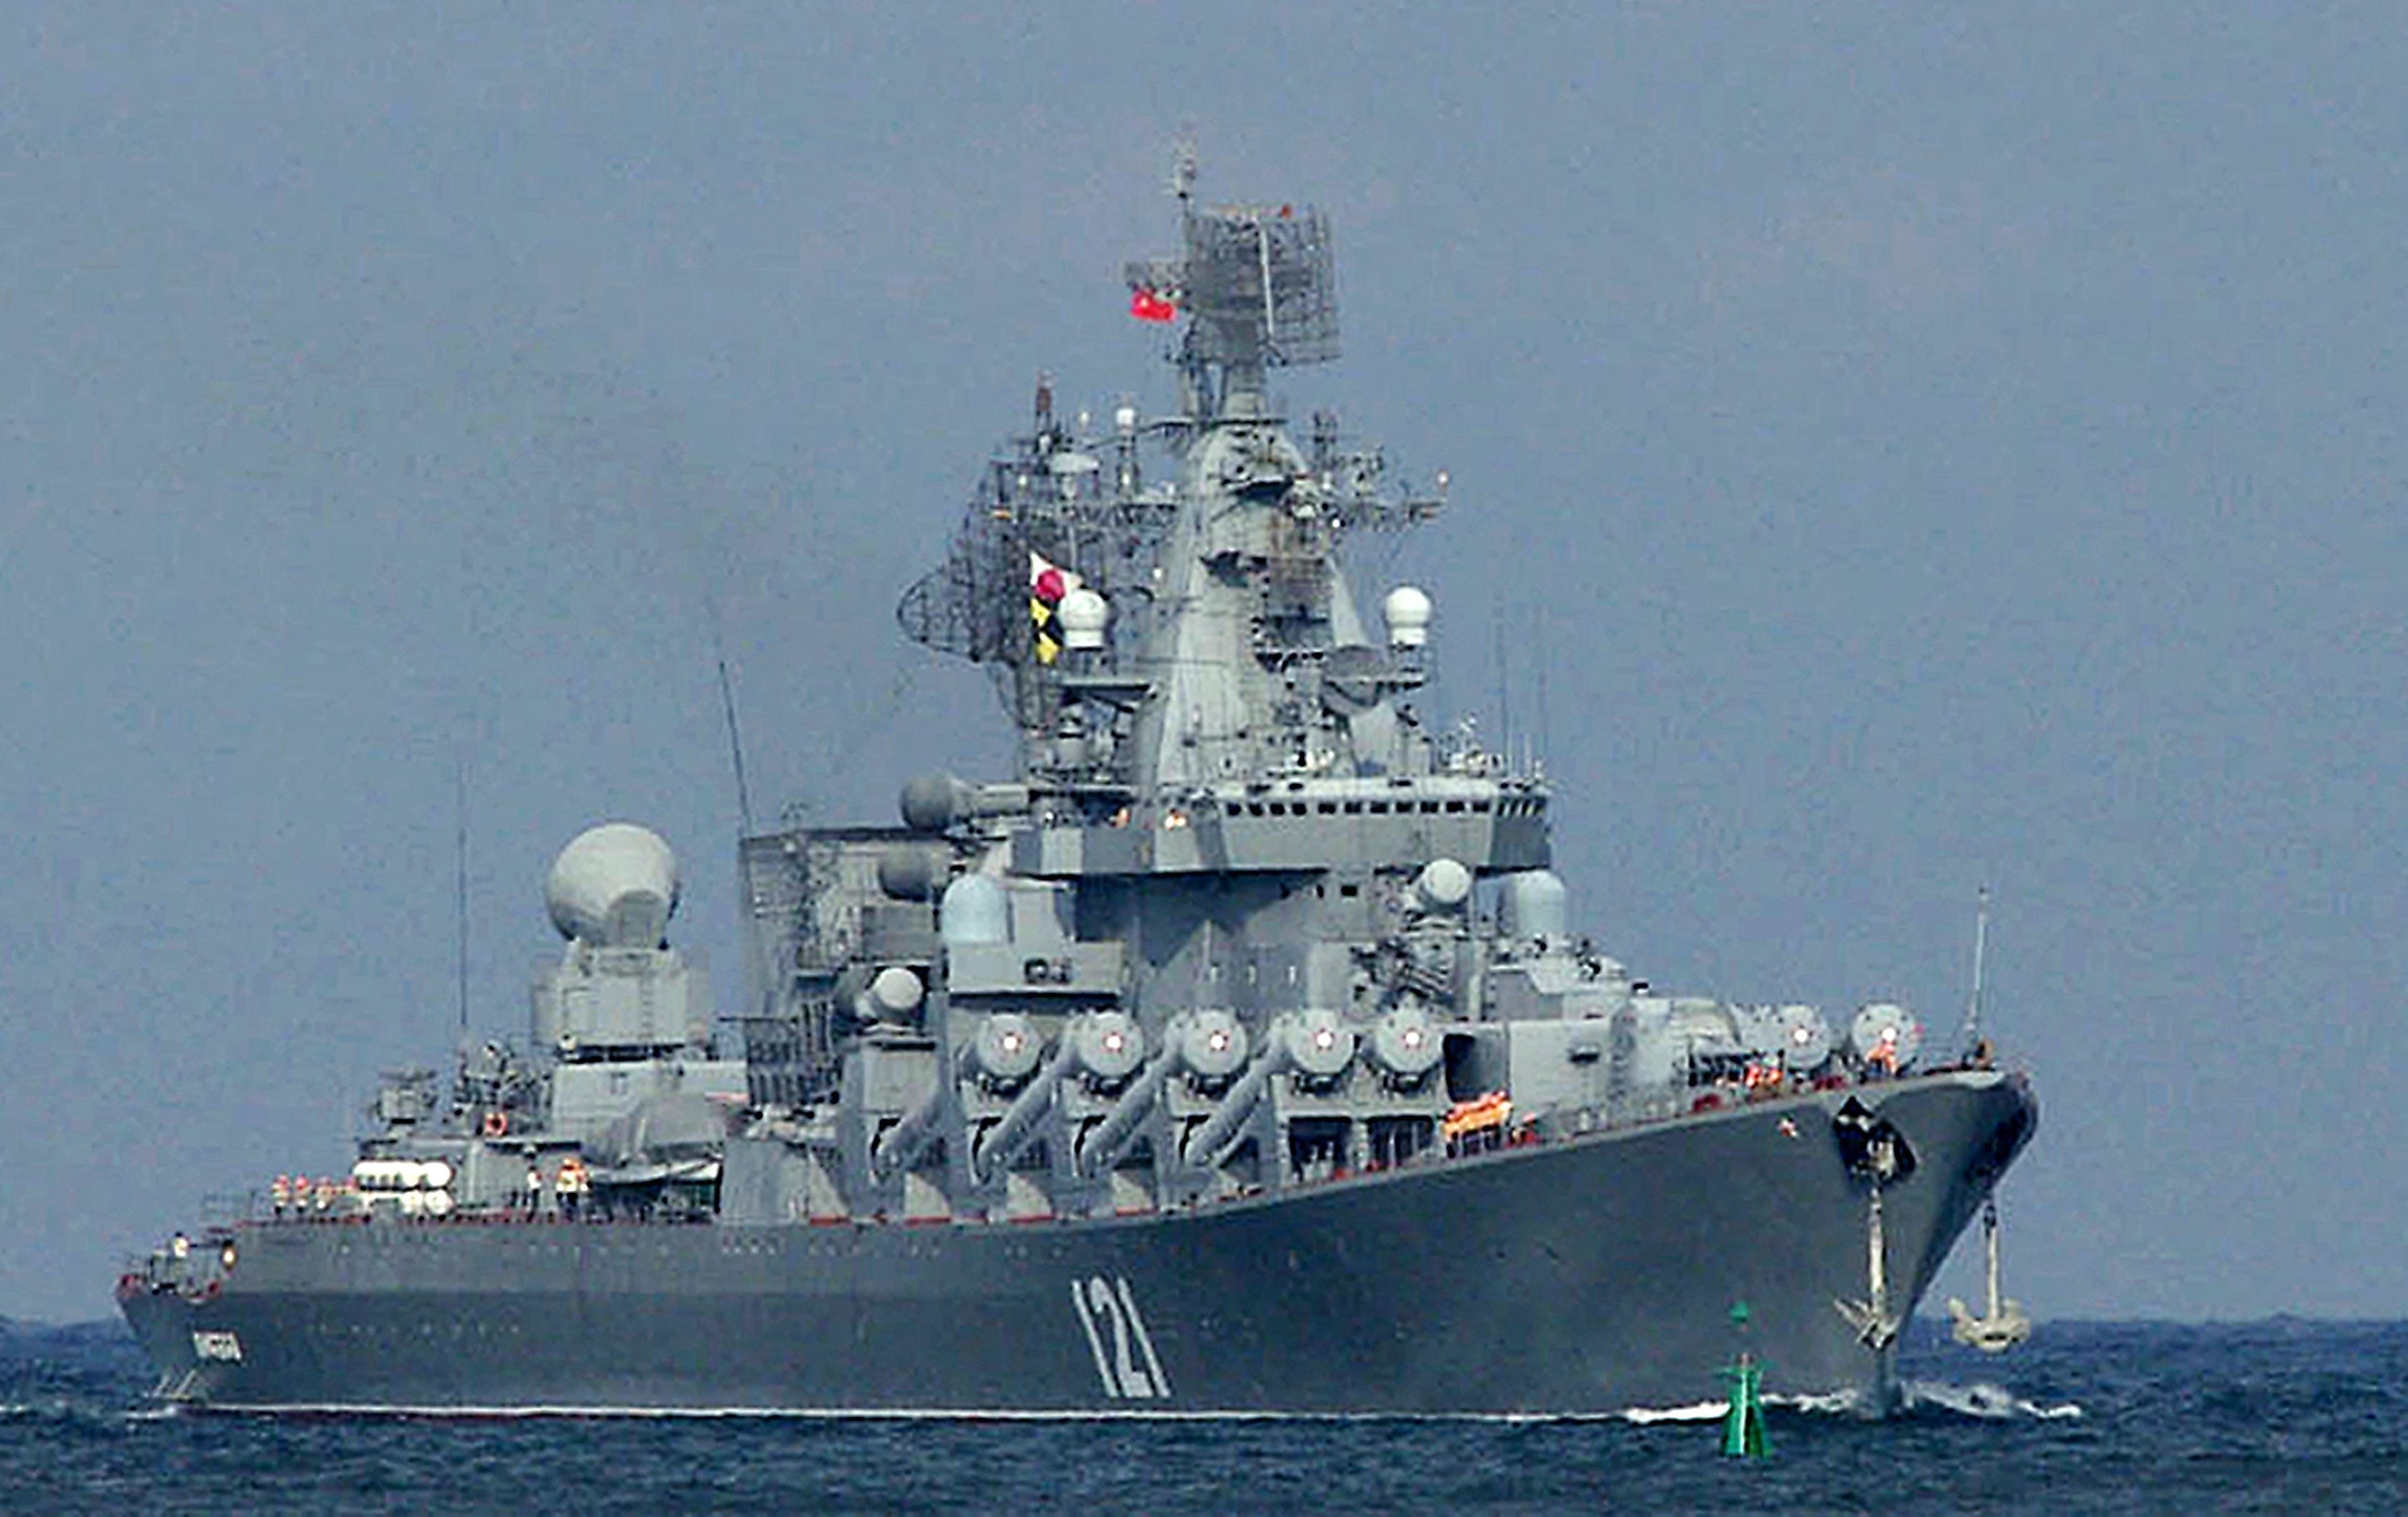 Fotografía del buque ruso Moskva